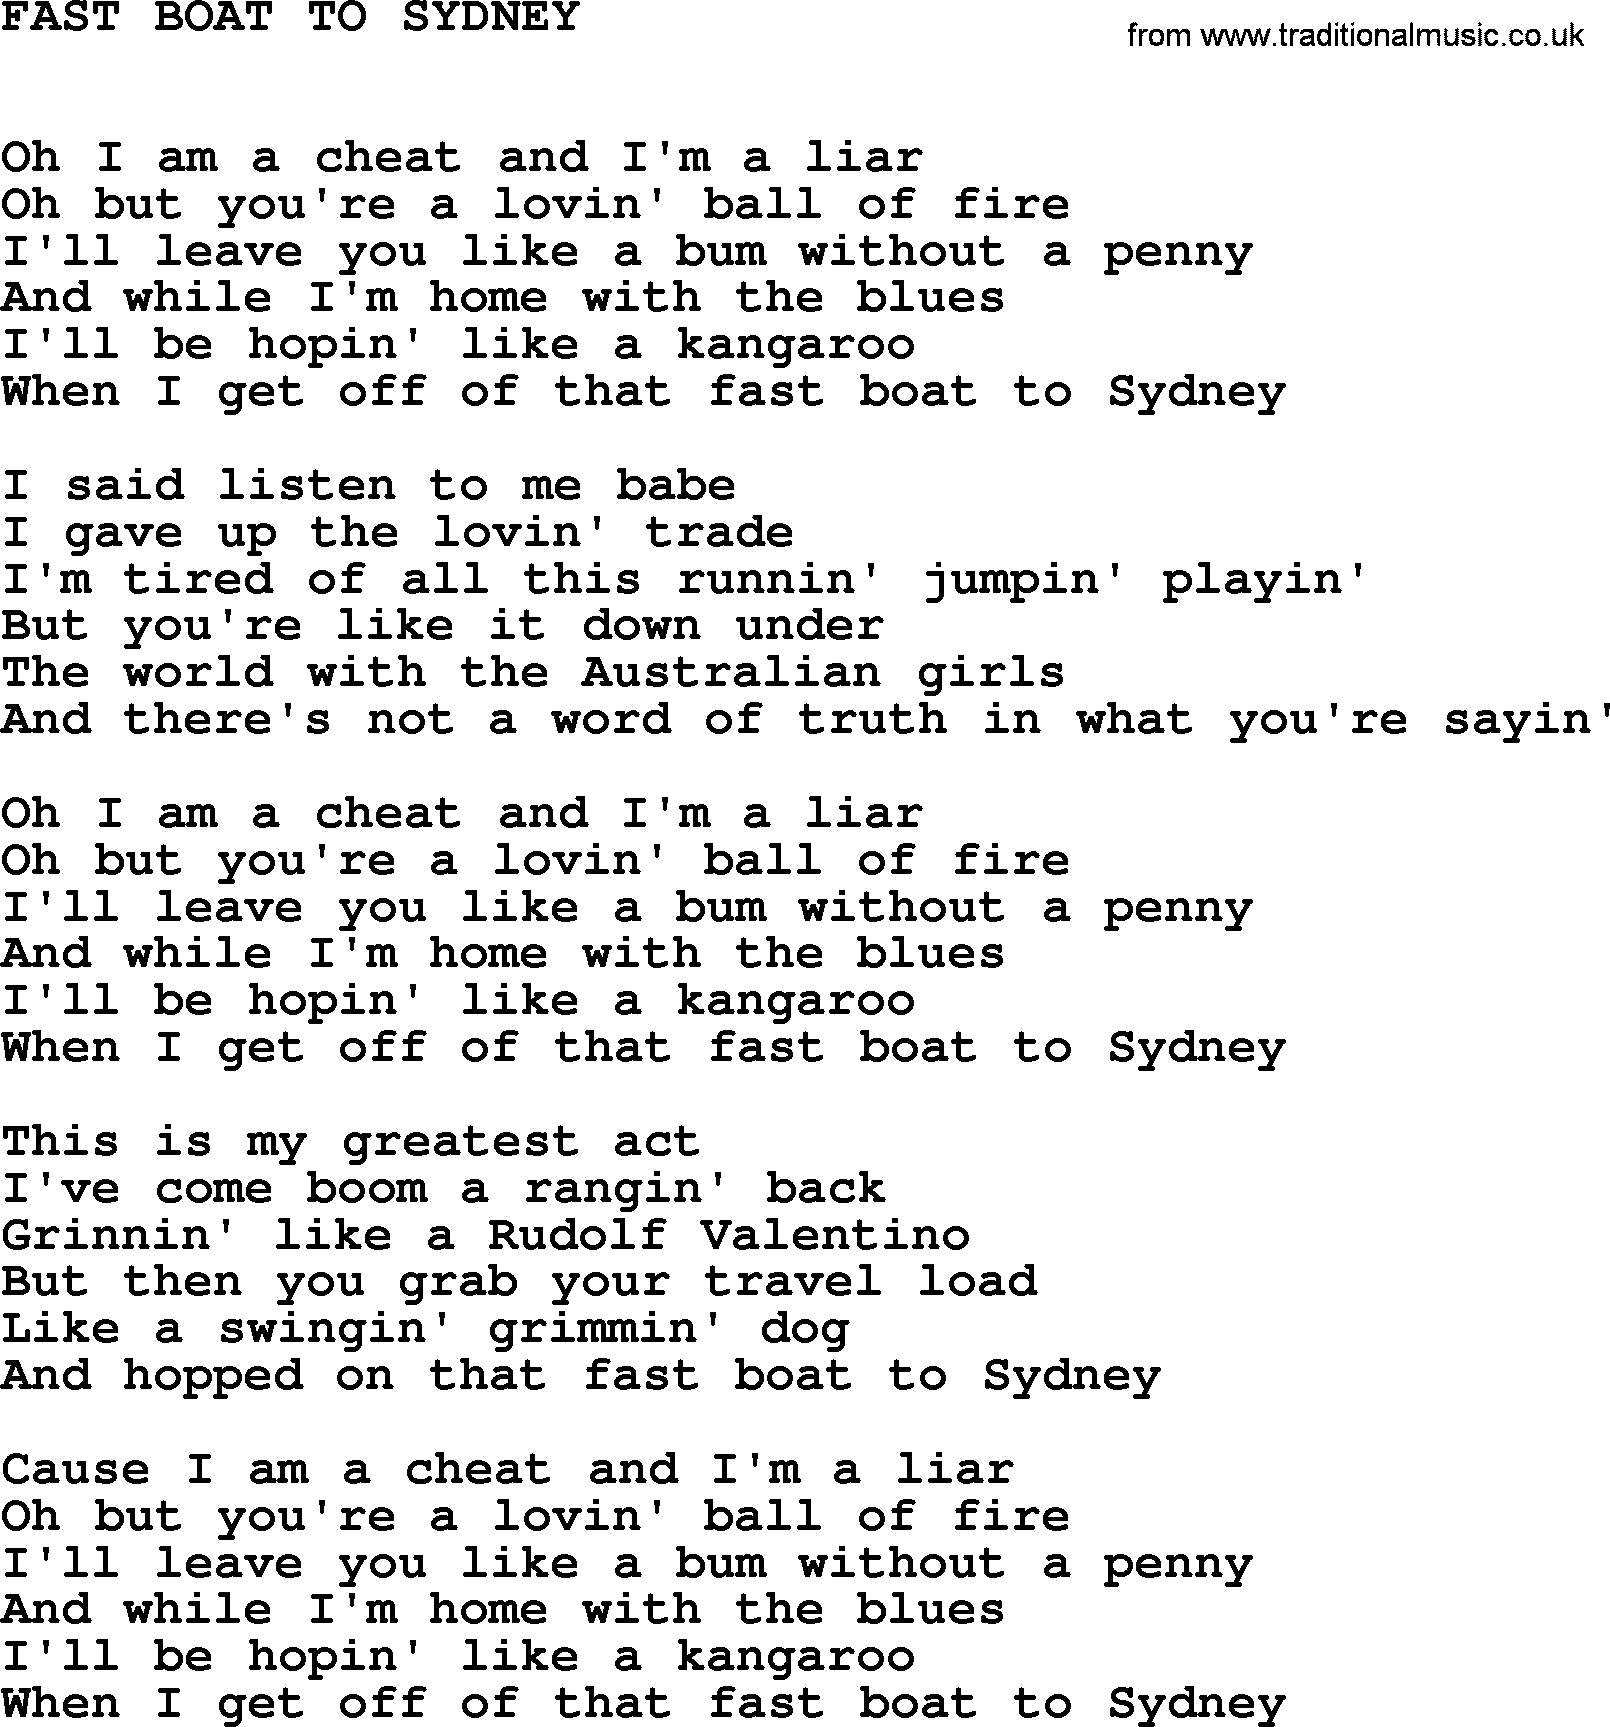 Johnny Cash song Fast Boat To Sydney.txt lyrics